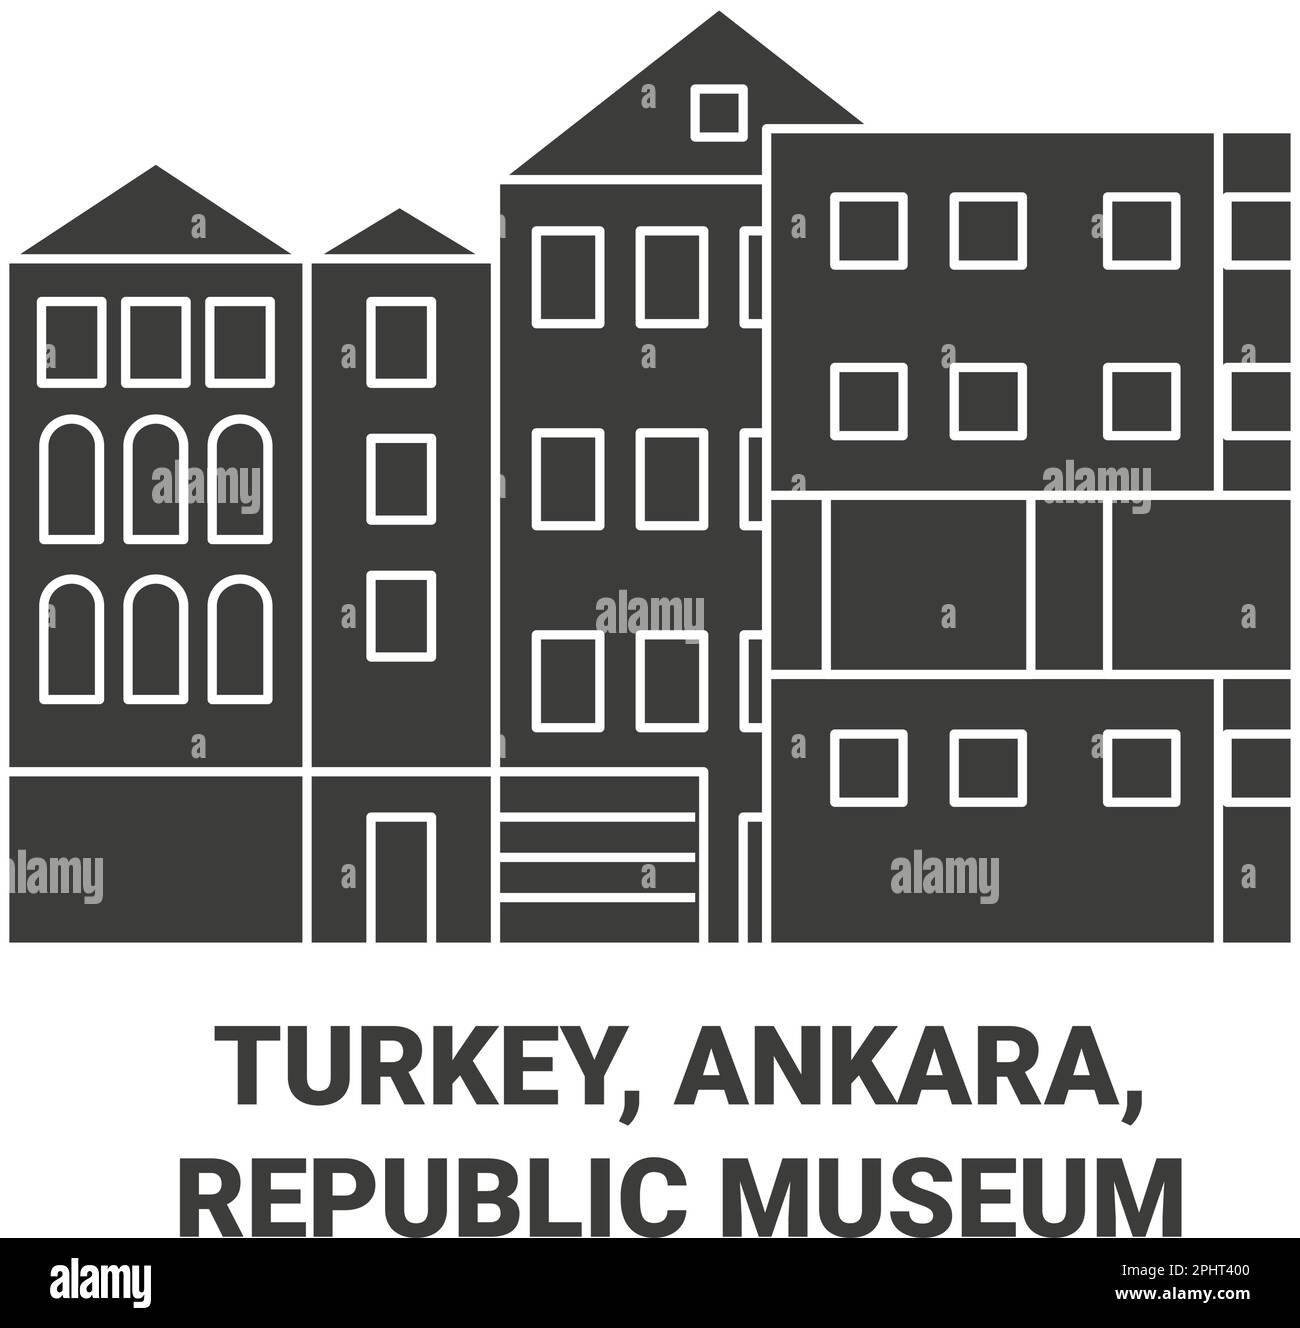 Turkey, Ankara, Republic Museum travel landmark vector illustration Stock Vector